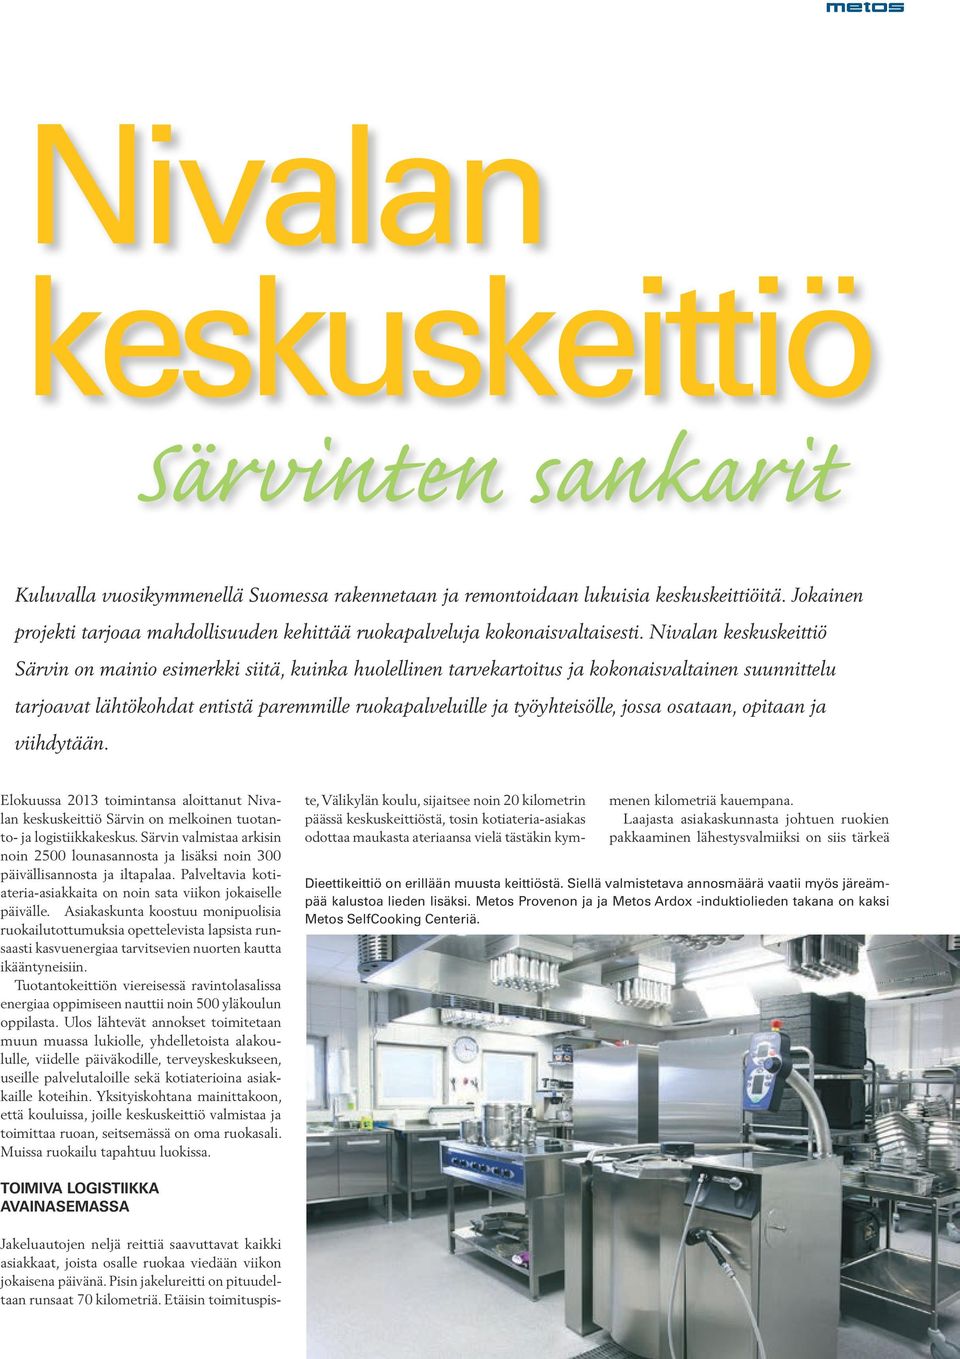 Nivalan keskuskeittiö Särvin on mainio esimerkki siitä, kuinka huolellinen tarvekartoitus ja kokonaisvaltainen suunnittelu tarjoavat lähtökohdat entistä paremmille ruokapalveluille ja työyhteisölle,